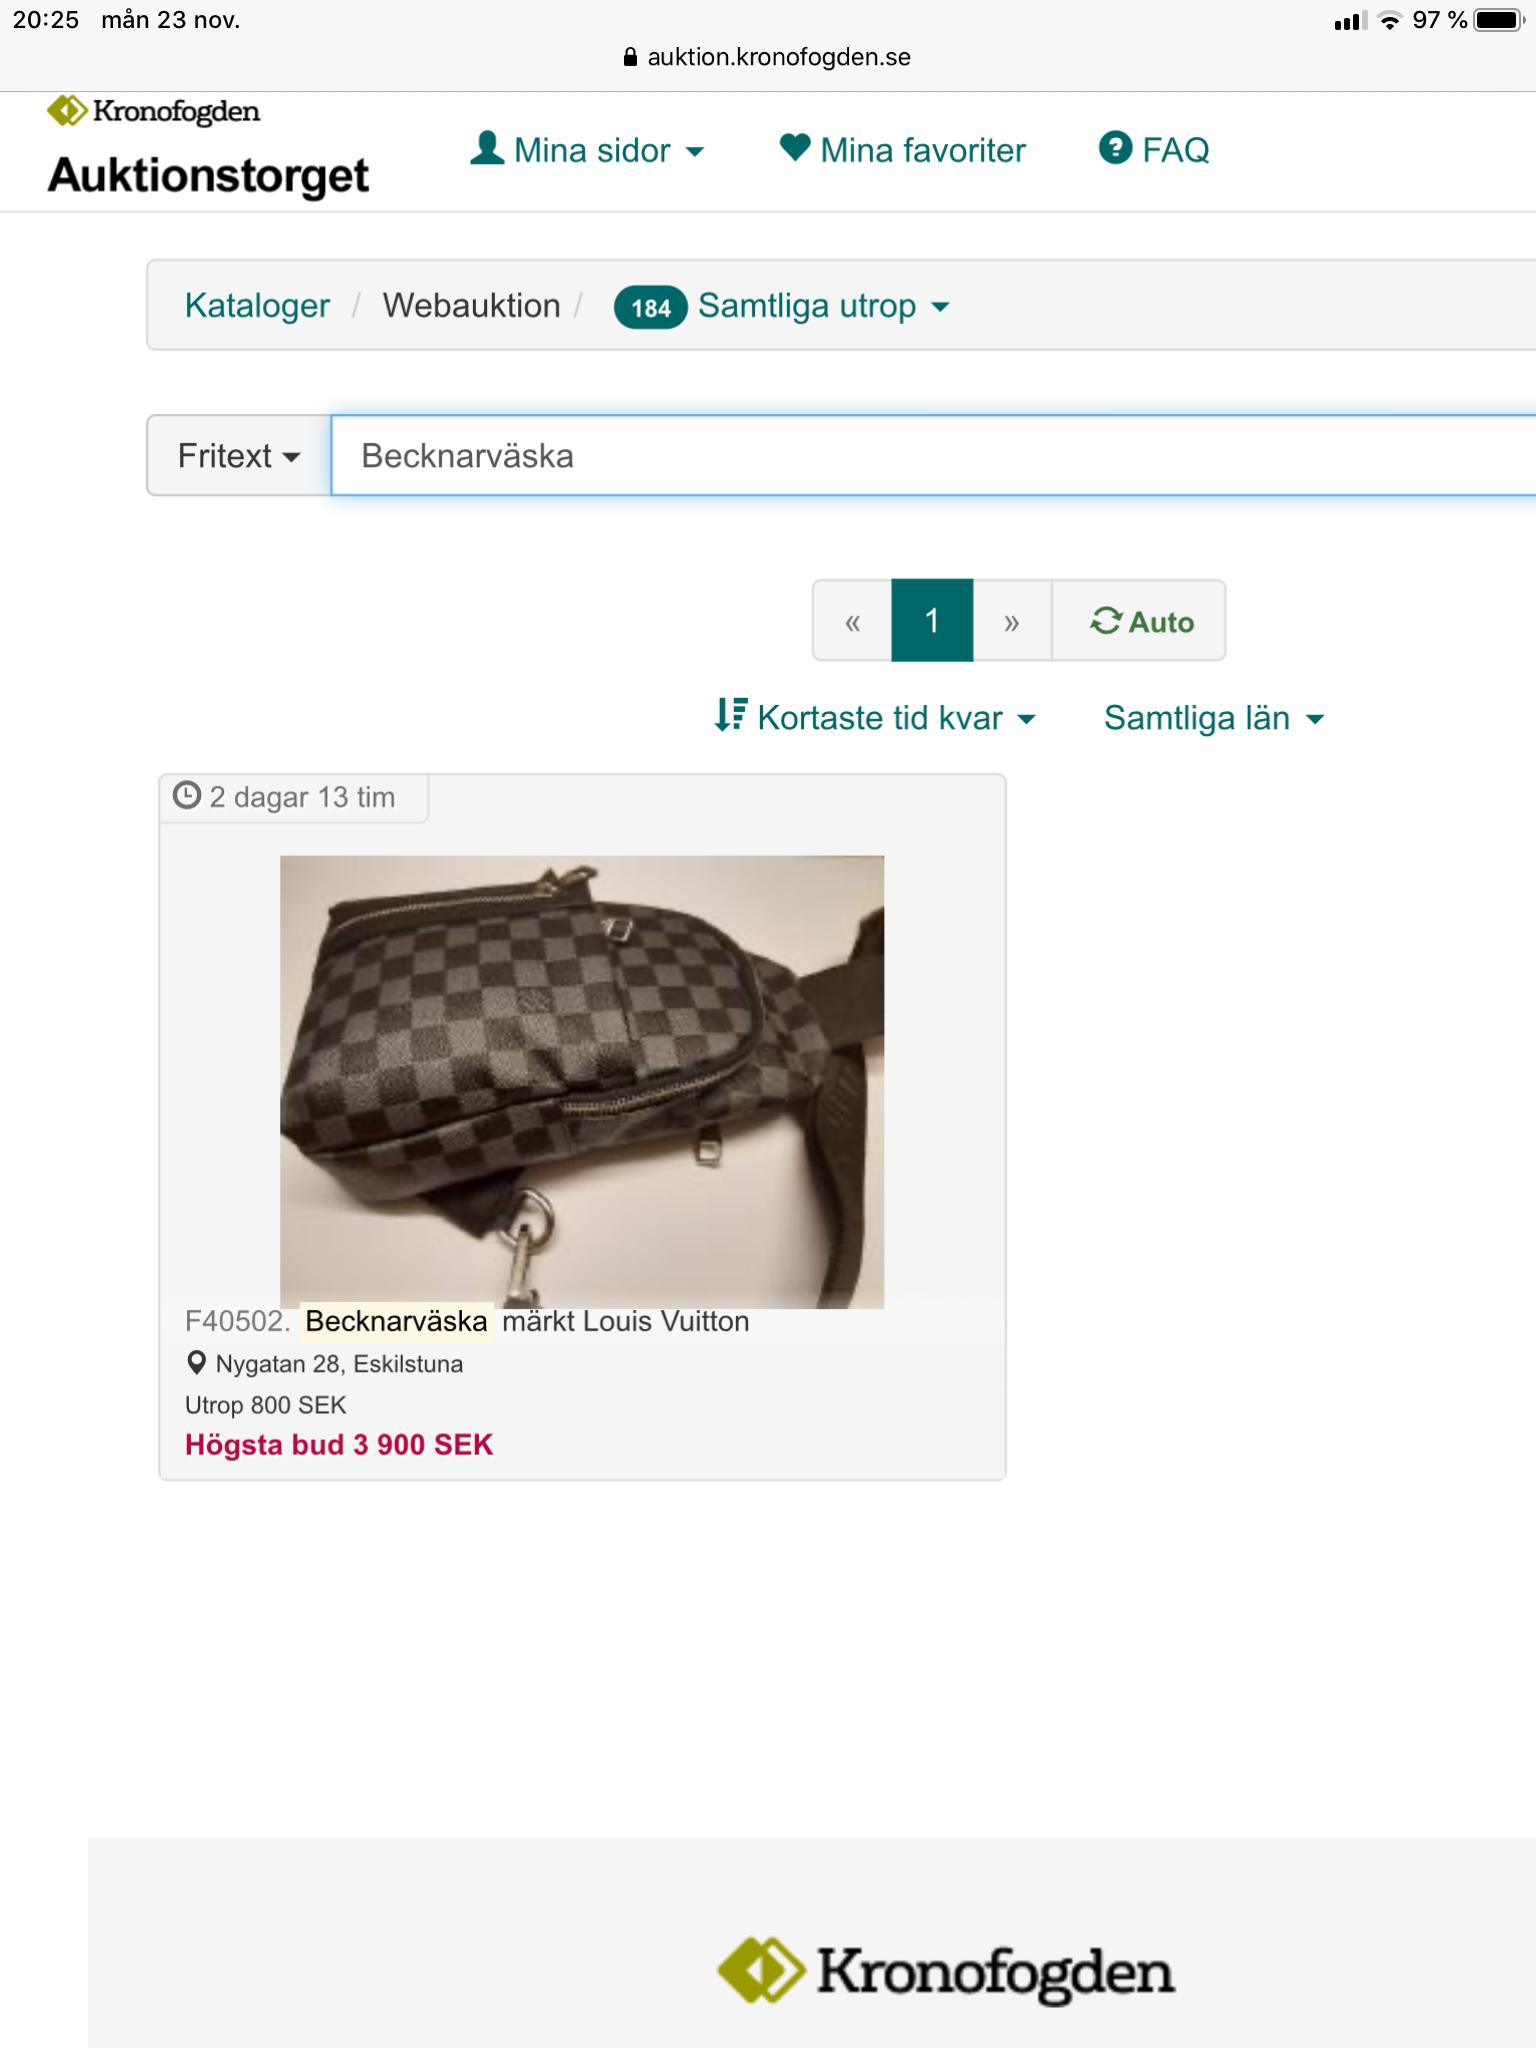 Skärmdump från Kronofogdens hemsida när de auktionerade ut ”becknarväskan”.